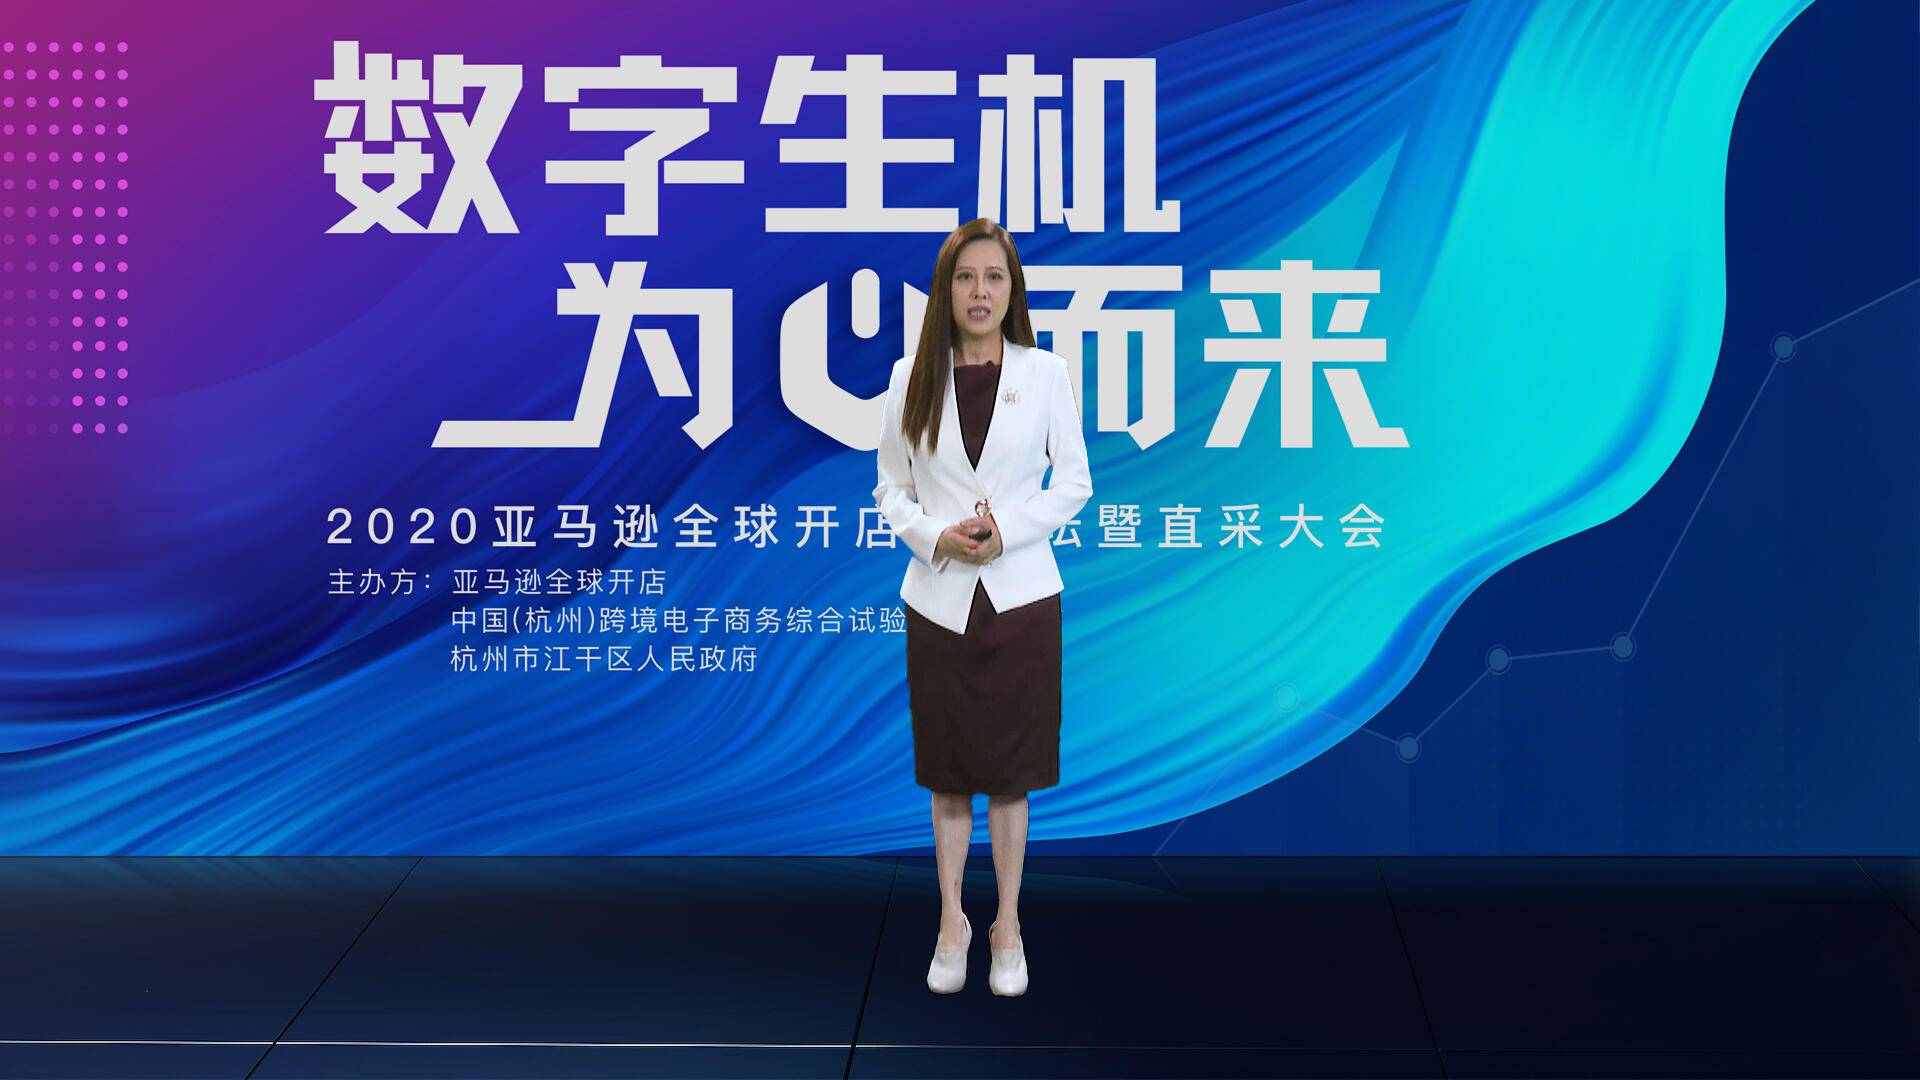 亚马逊全球开店发布2020中国出口跨境电商趋势报告(亚马逊 跨境电商近期发布)